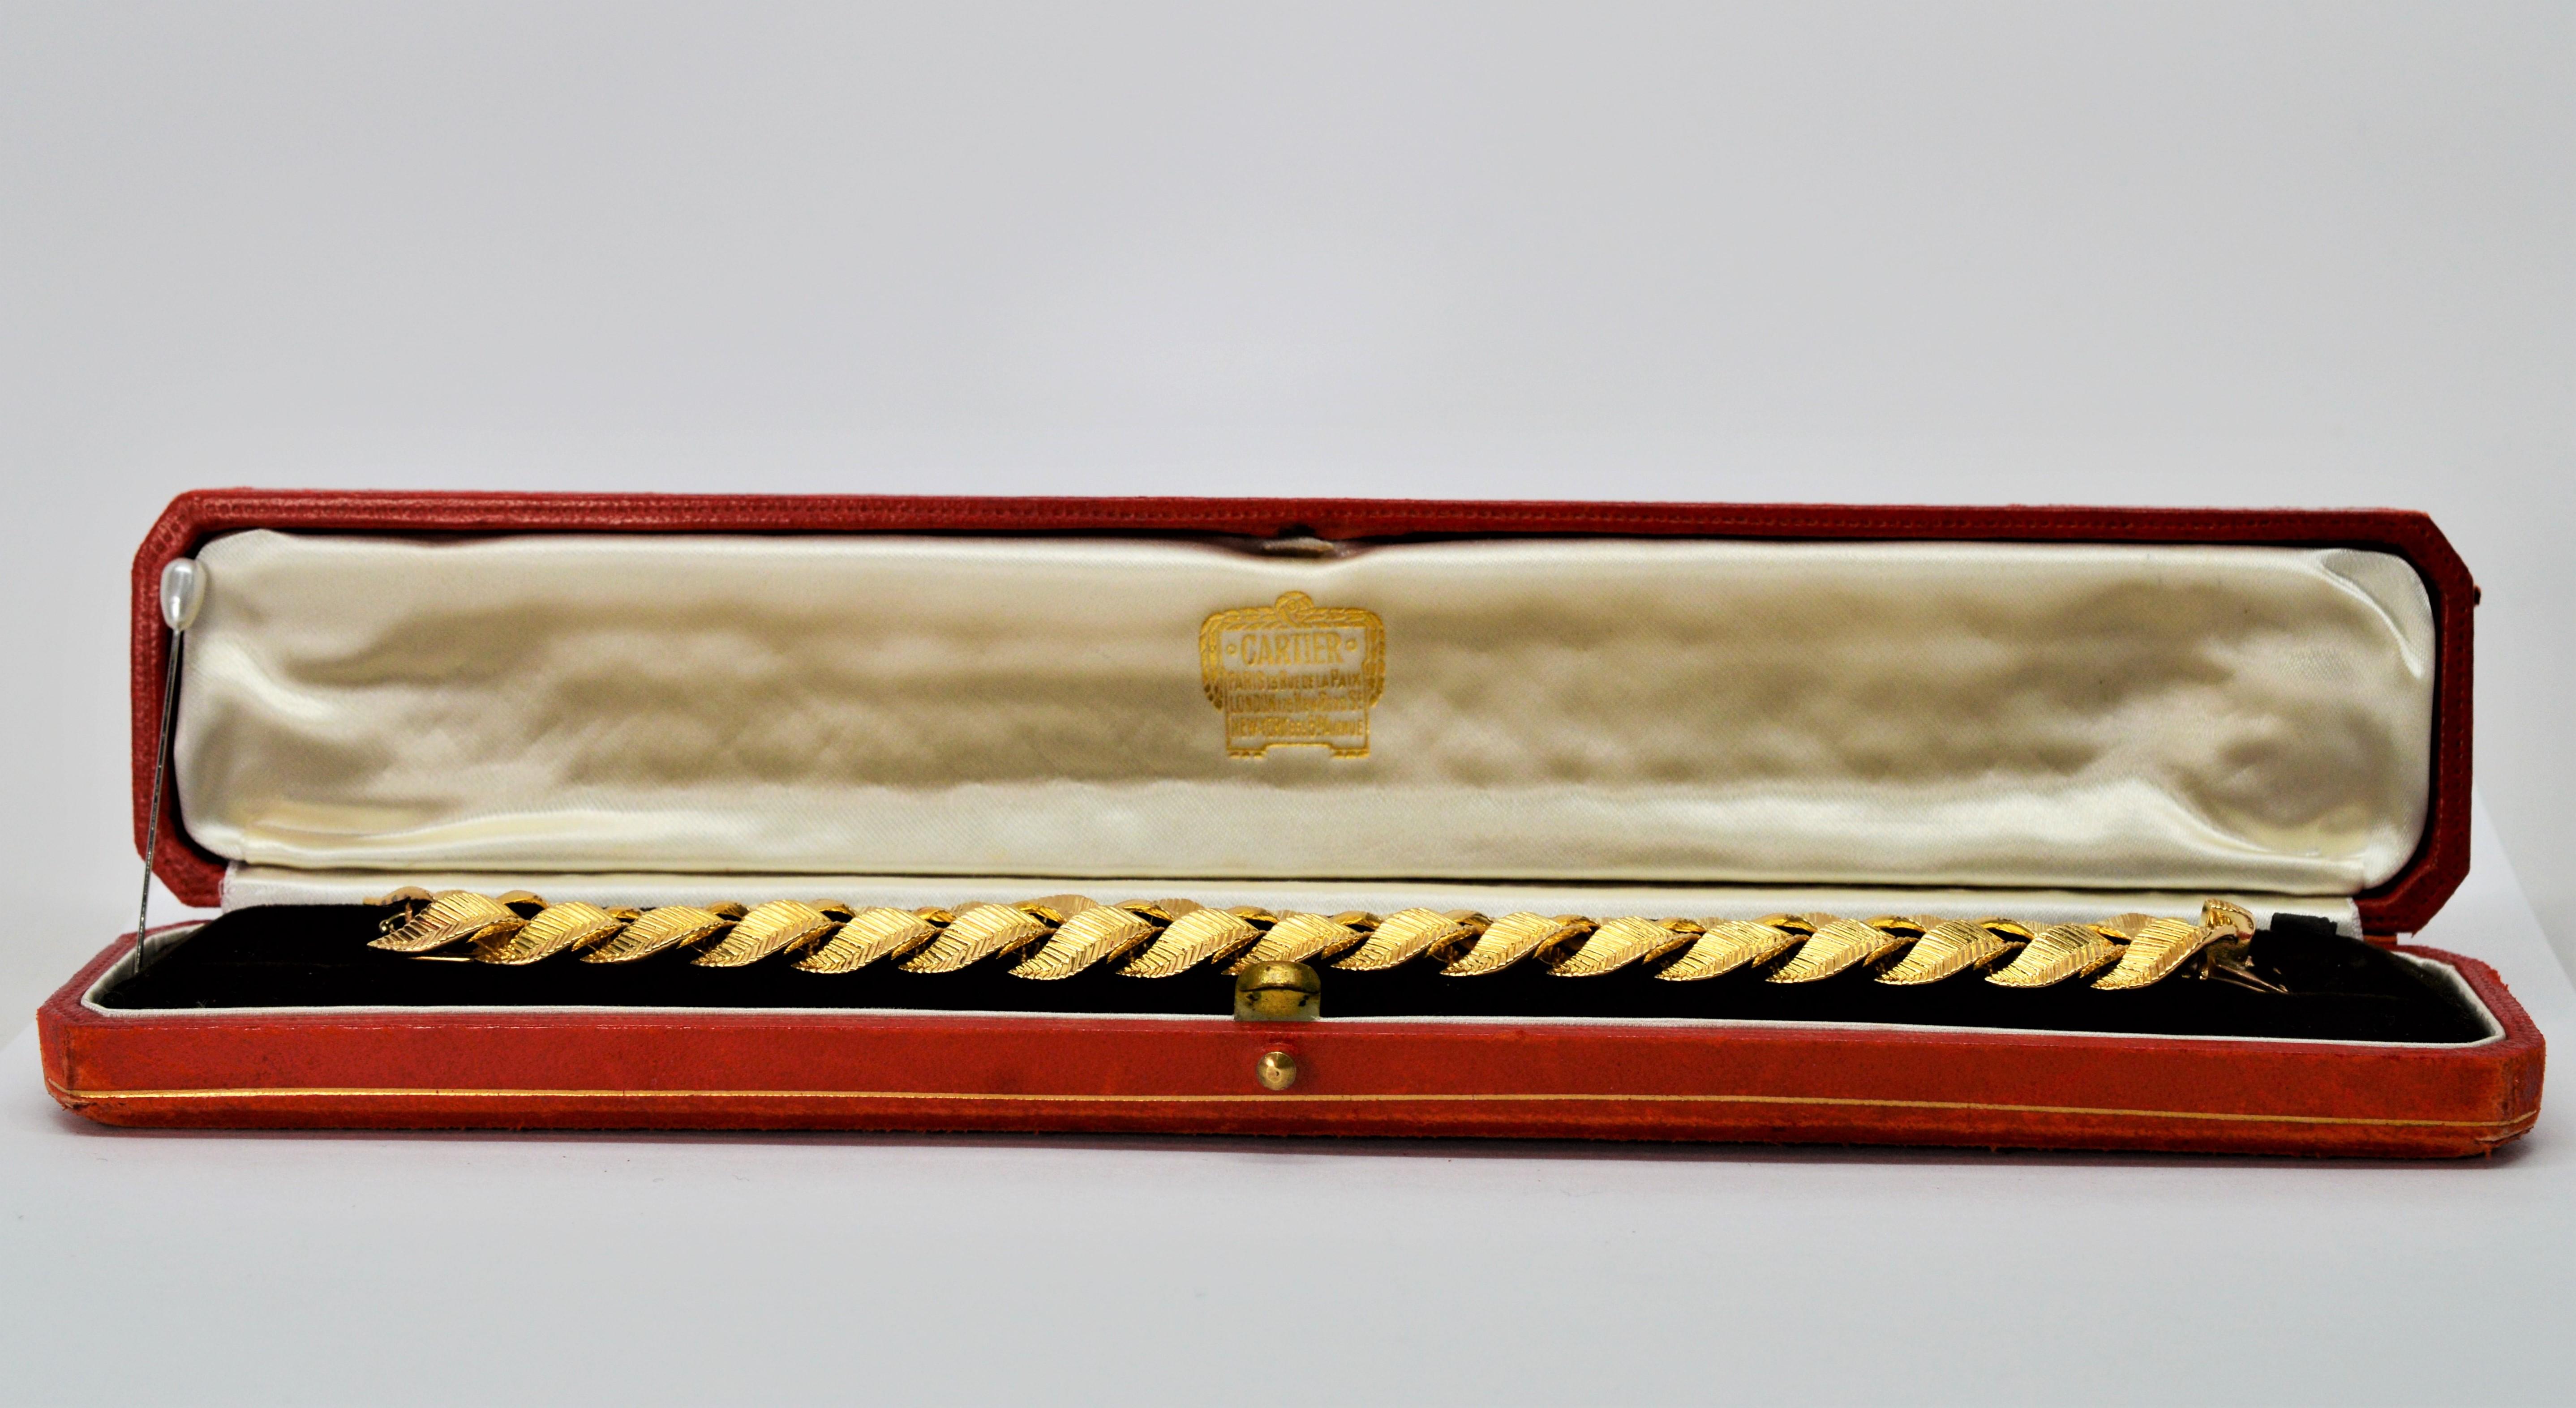 Absolut fabelhaft und eine herausragende Ergänzung für jede Cartier-Sammlung. Dieses glänzende Armband aus 18-karätigem Gelbgold mit seinem klassischen geflochtenen Blattmotiv ist alles andere als gewöhnlich. Geschätzt kurz nach dem Krieg und